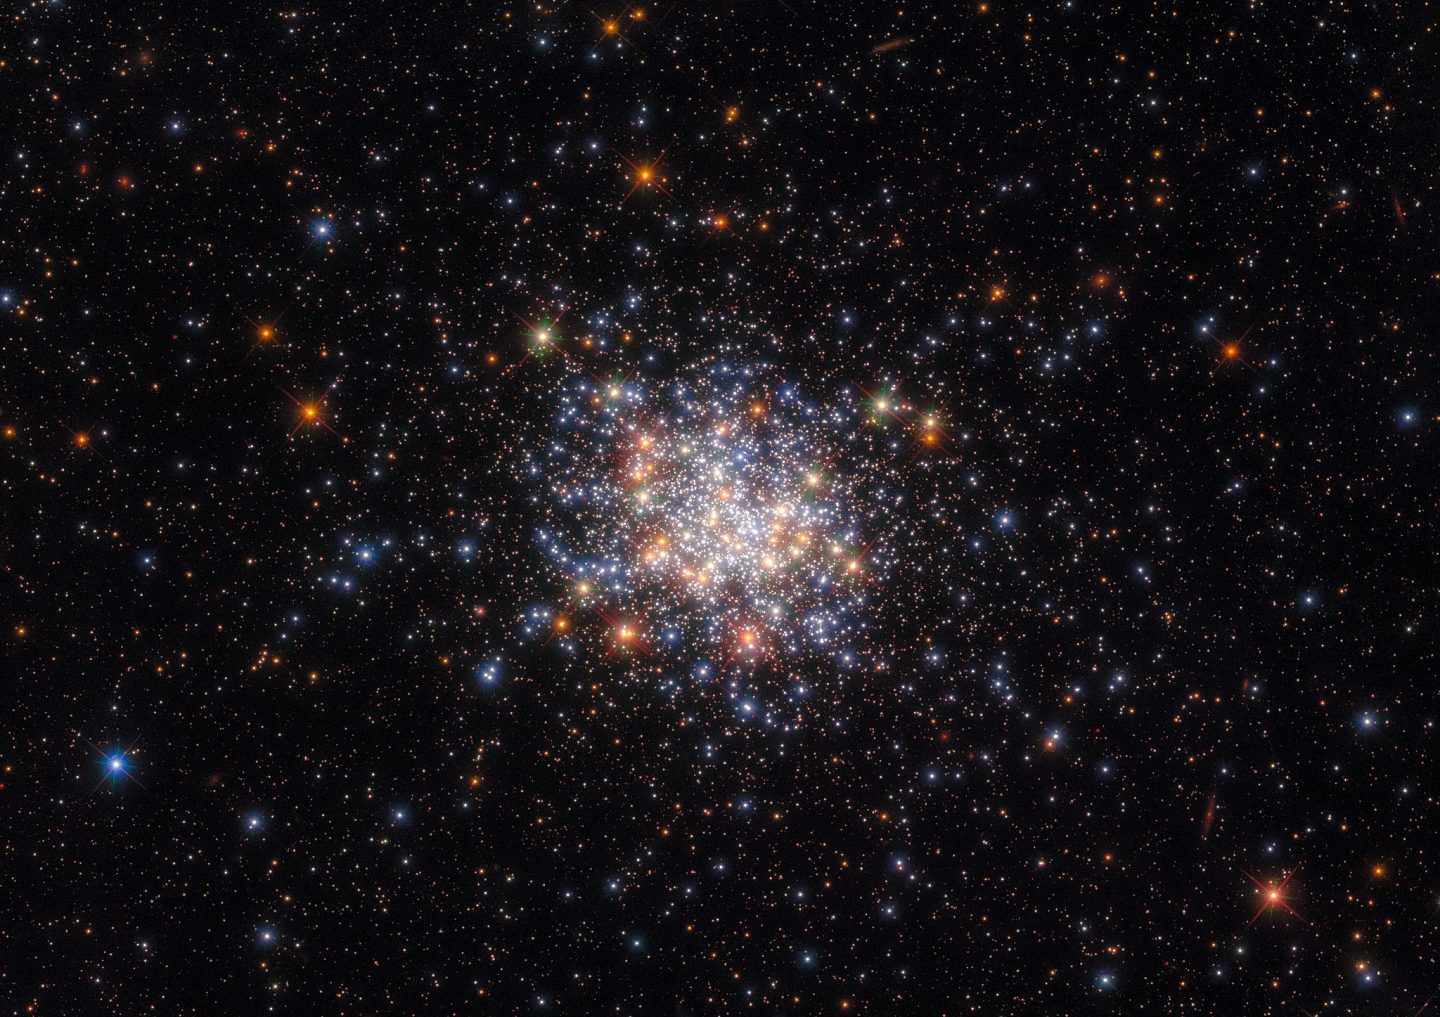 哈勃太空望远镜捕捉到绚丽的开放式星团NGC 1755 - 1